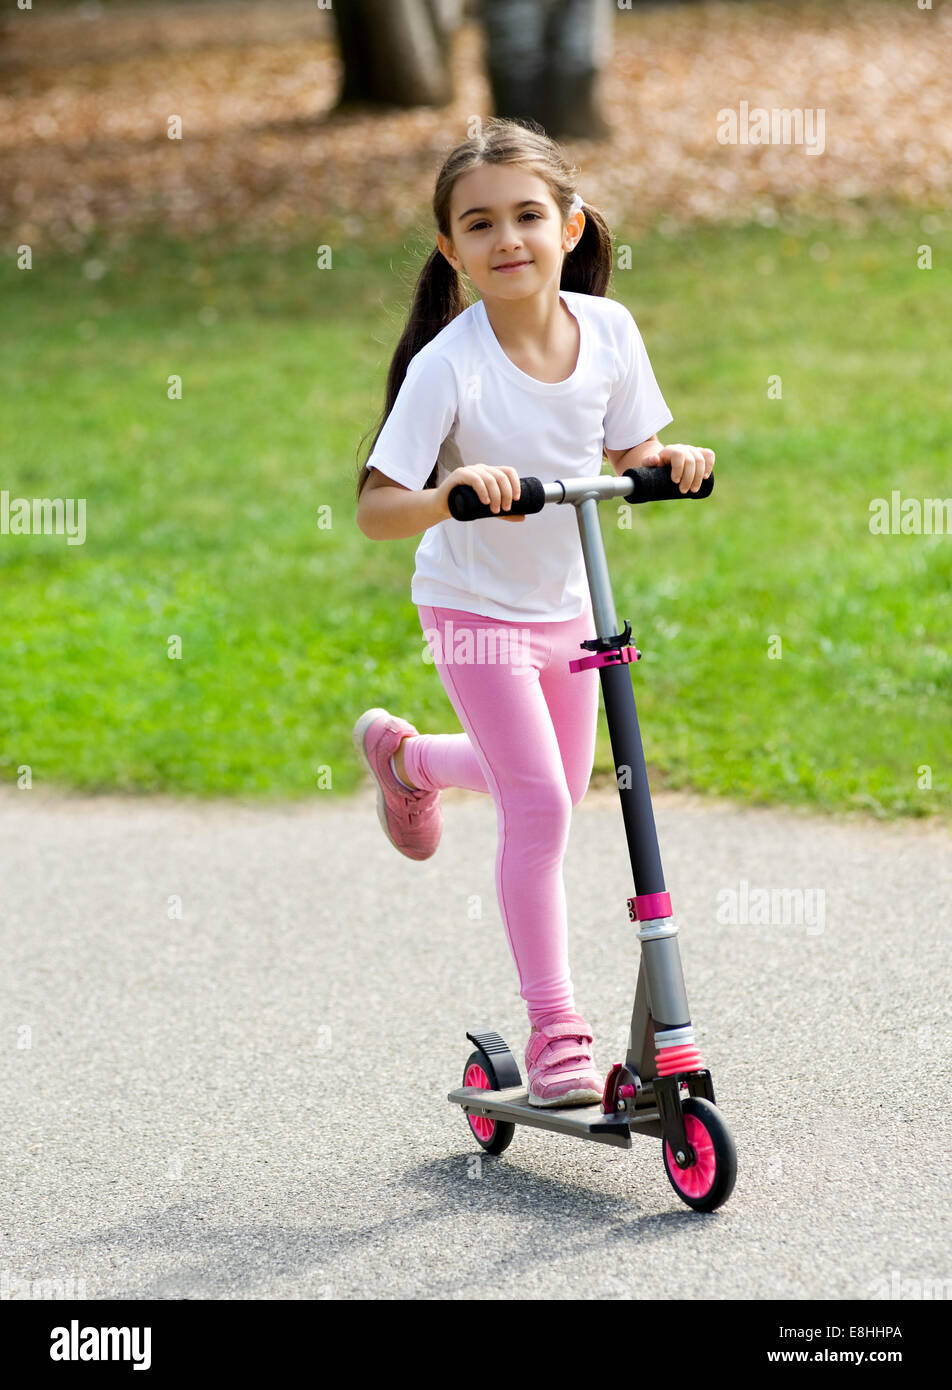 Süße junge Mädchen in Rosa mit ihrem braunen Haar in Zöpfen auf einen Push-Roller im Freien auf einer Straße mit Spaß und lächelnd zu spielen Stockfoto